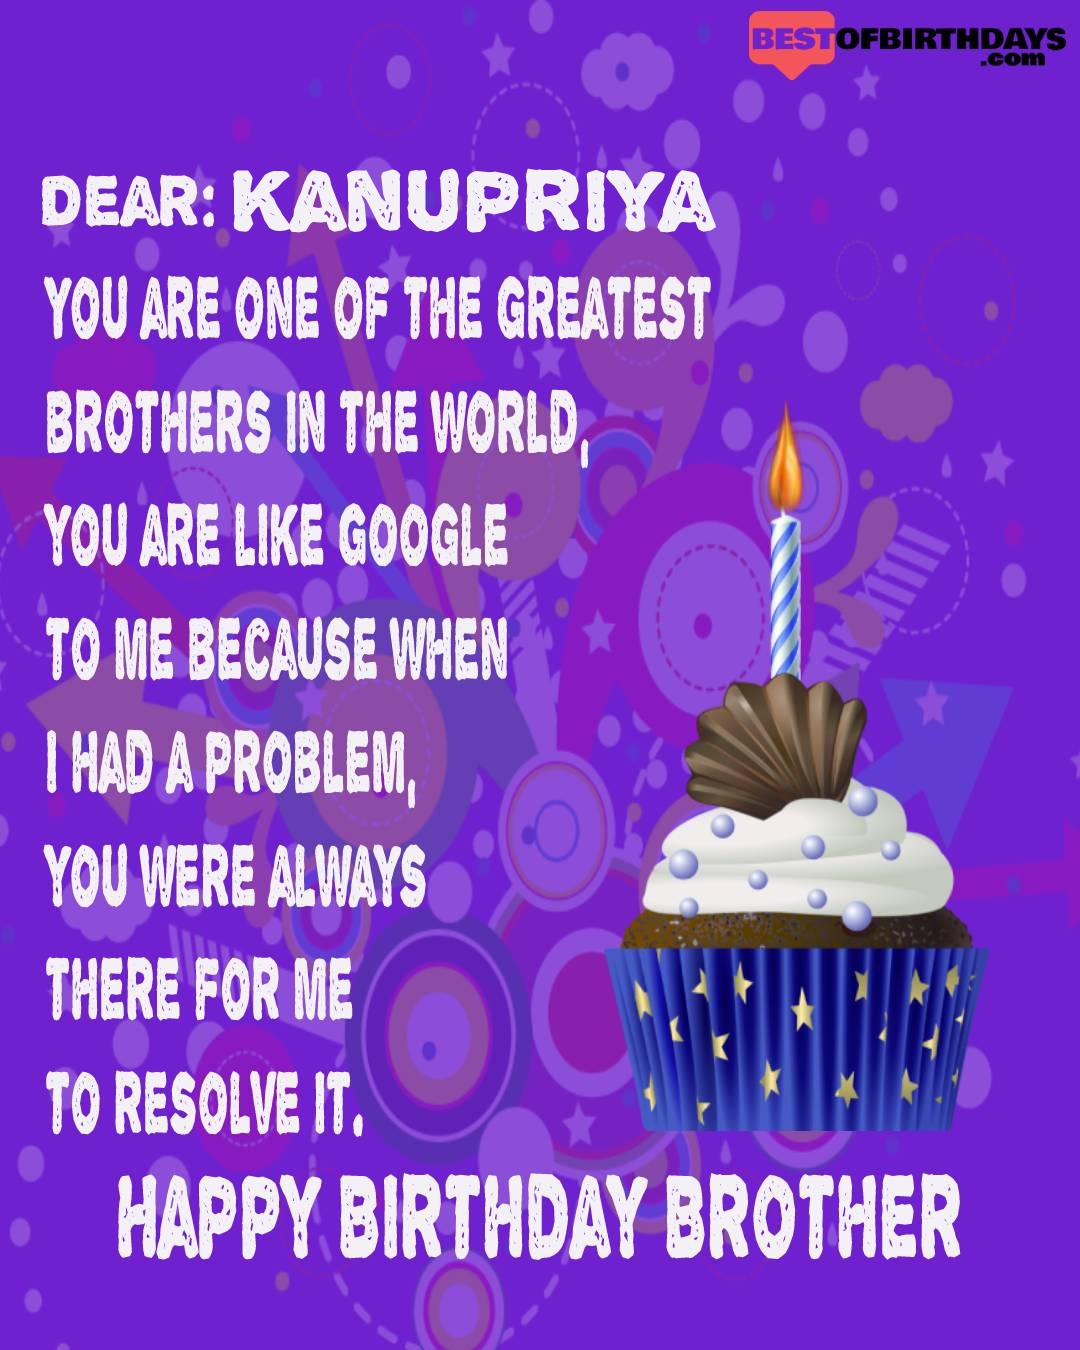 Happy birthday kanupriya bhai brother bro